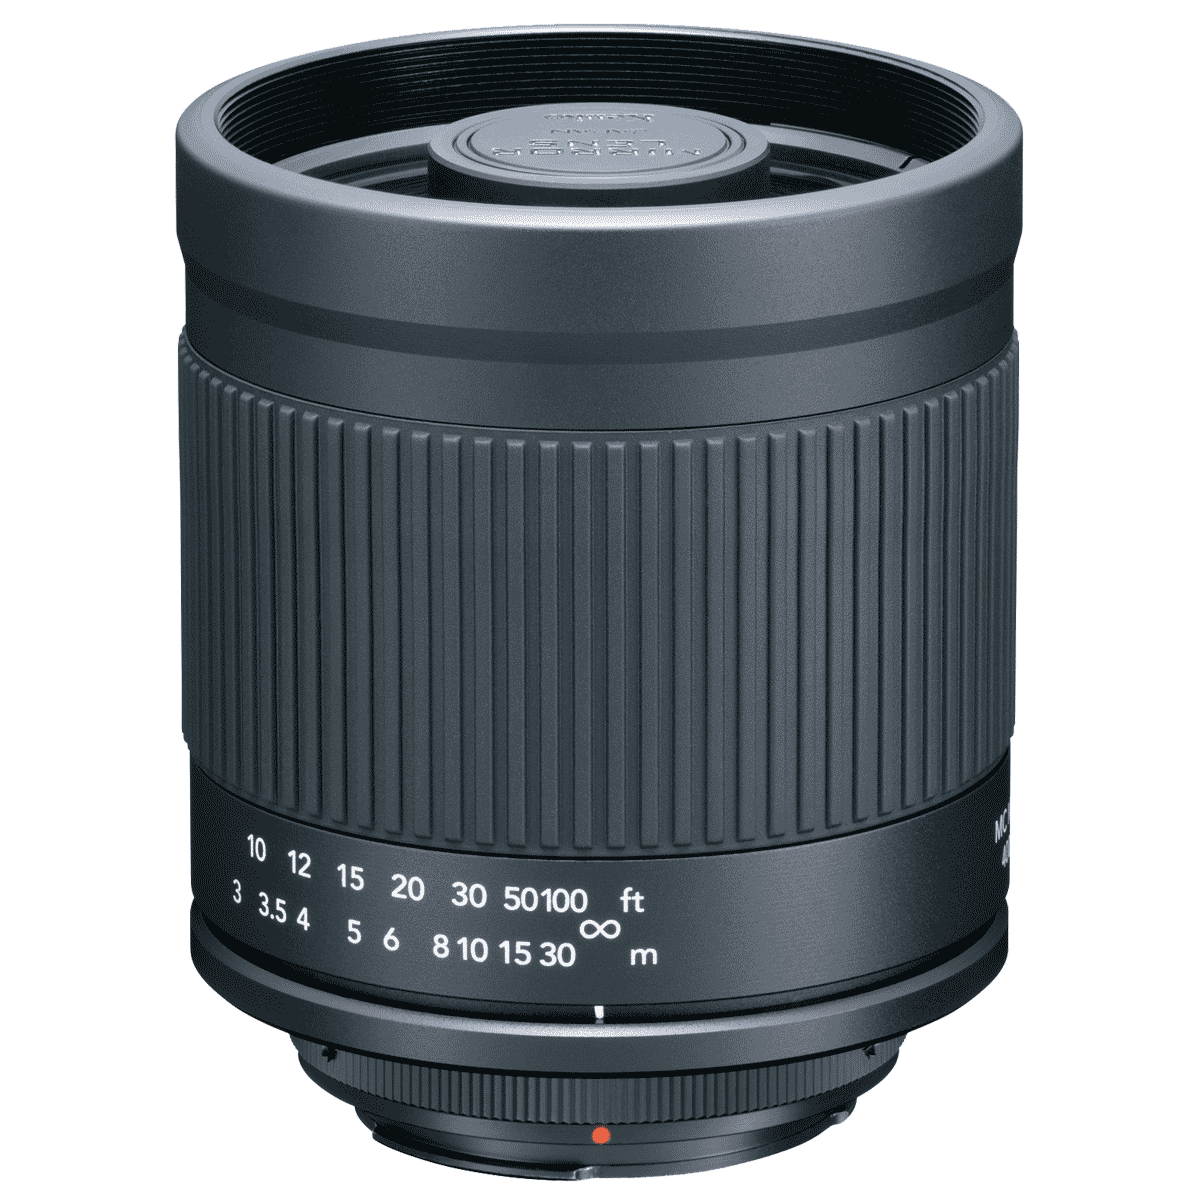 Kenko Global - Mirror Lens 400mm F8 N II